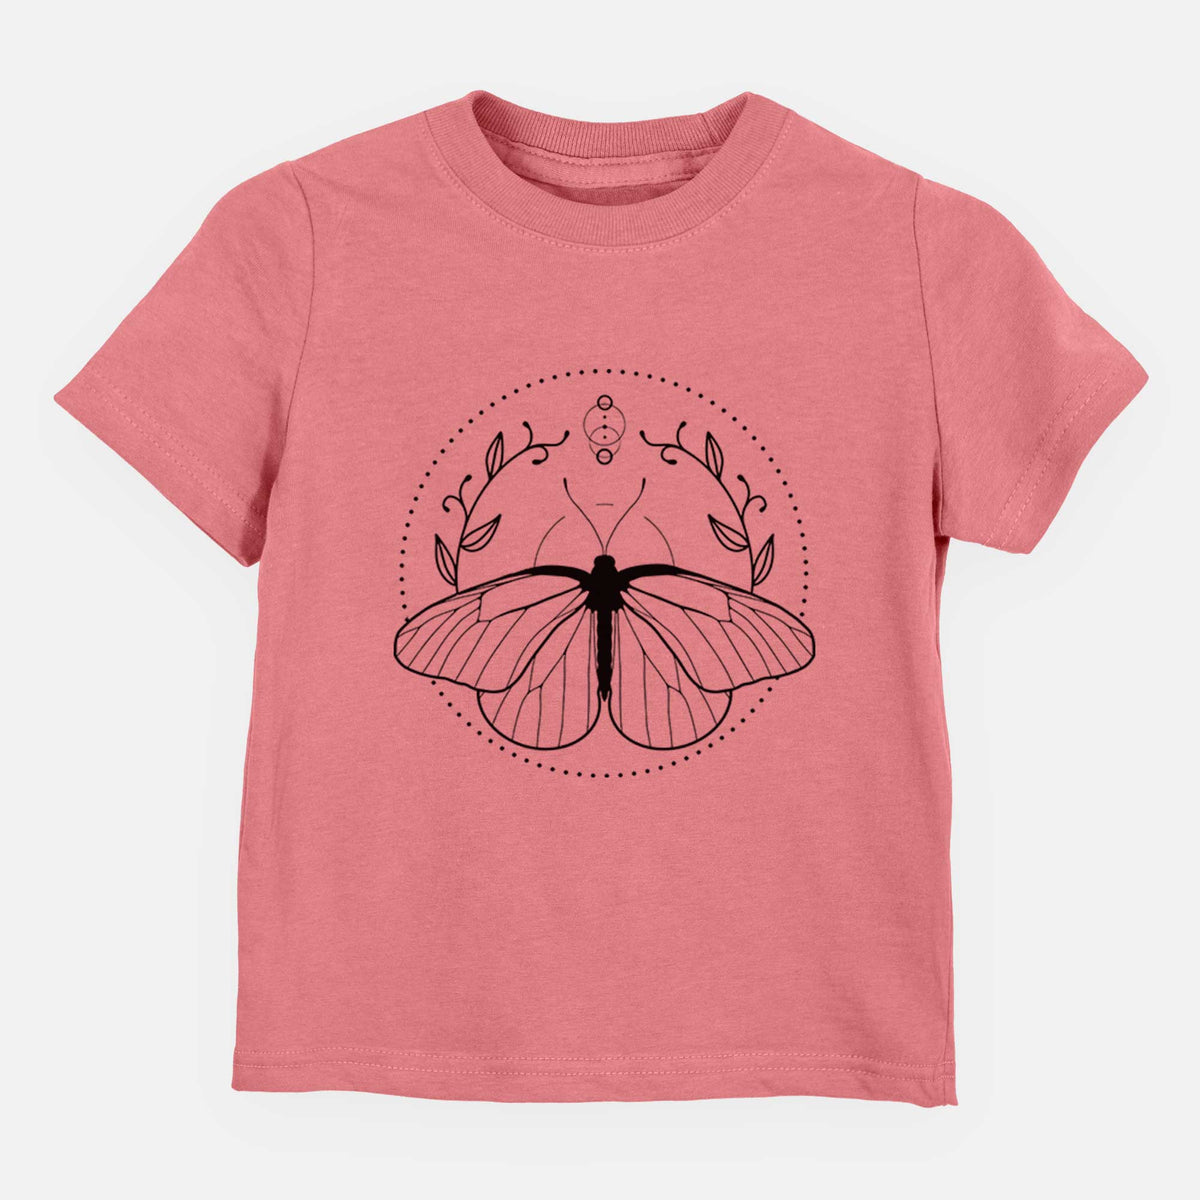 Aporia crataegi - Black Veined White Butterfly - Kids Shirt